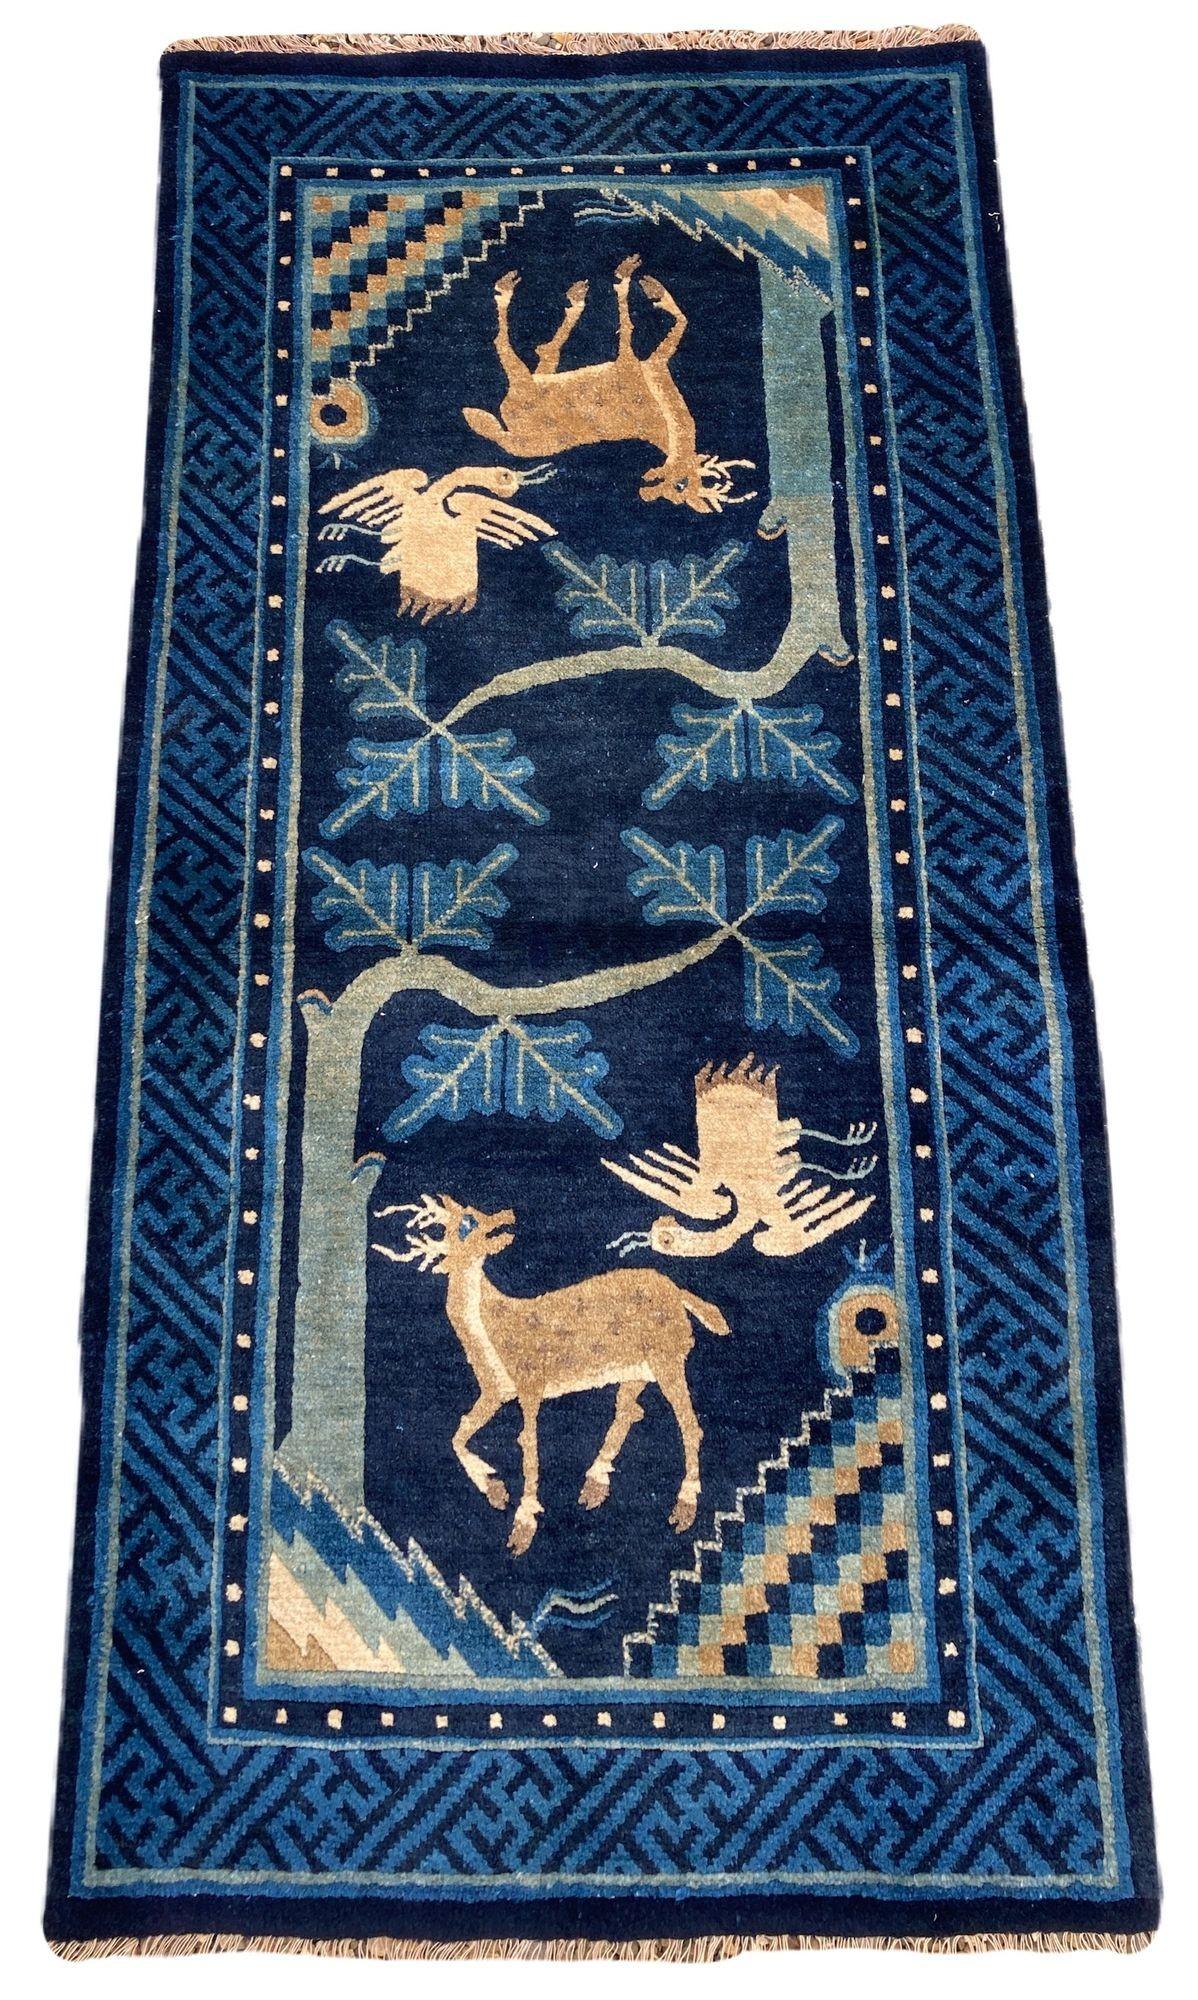 Ravissant tapis Pao-Tao vintage, tissé à la main en Chine vers 1940, avec le motif traditionnel du cerf et de la grue sur un champ indigo profond et une bordure en forme de clé.
Taille : 1,32m x 0,71m (4ft 4in x 2ft 4in)
Ce tapis est en bon état